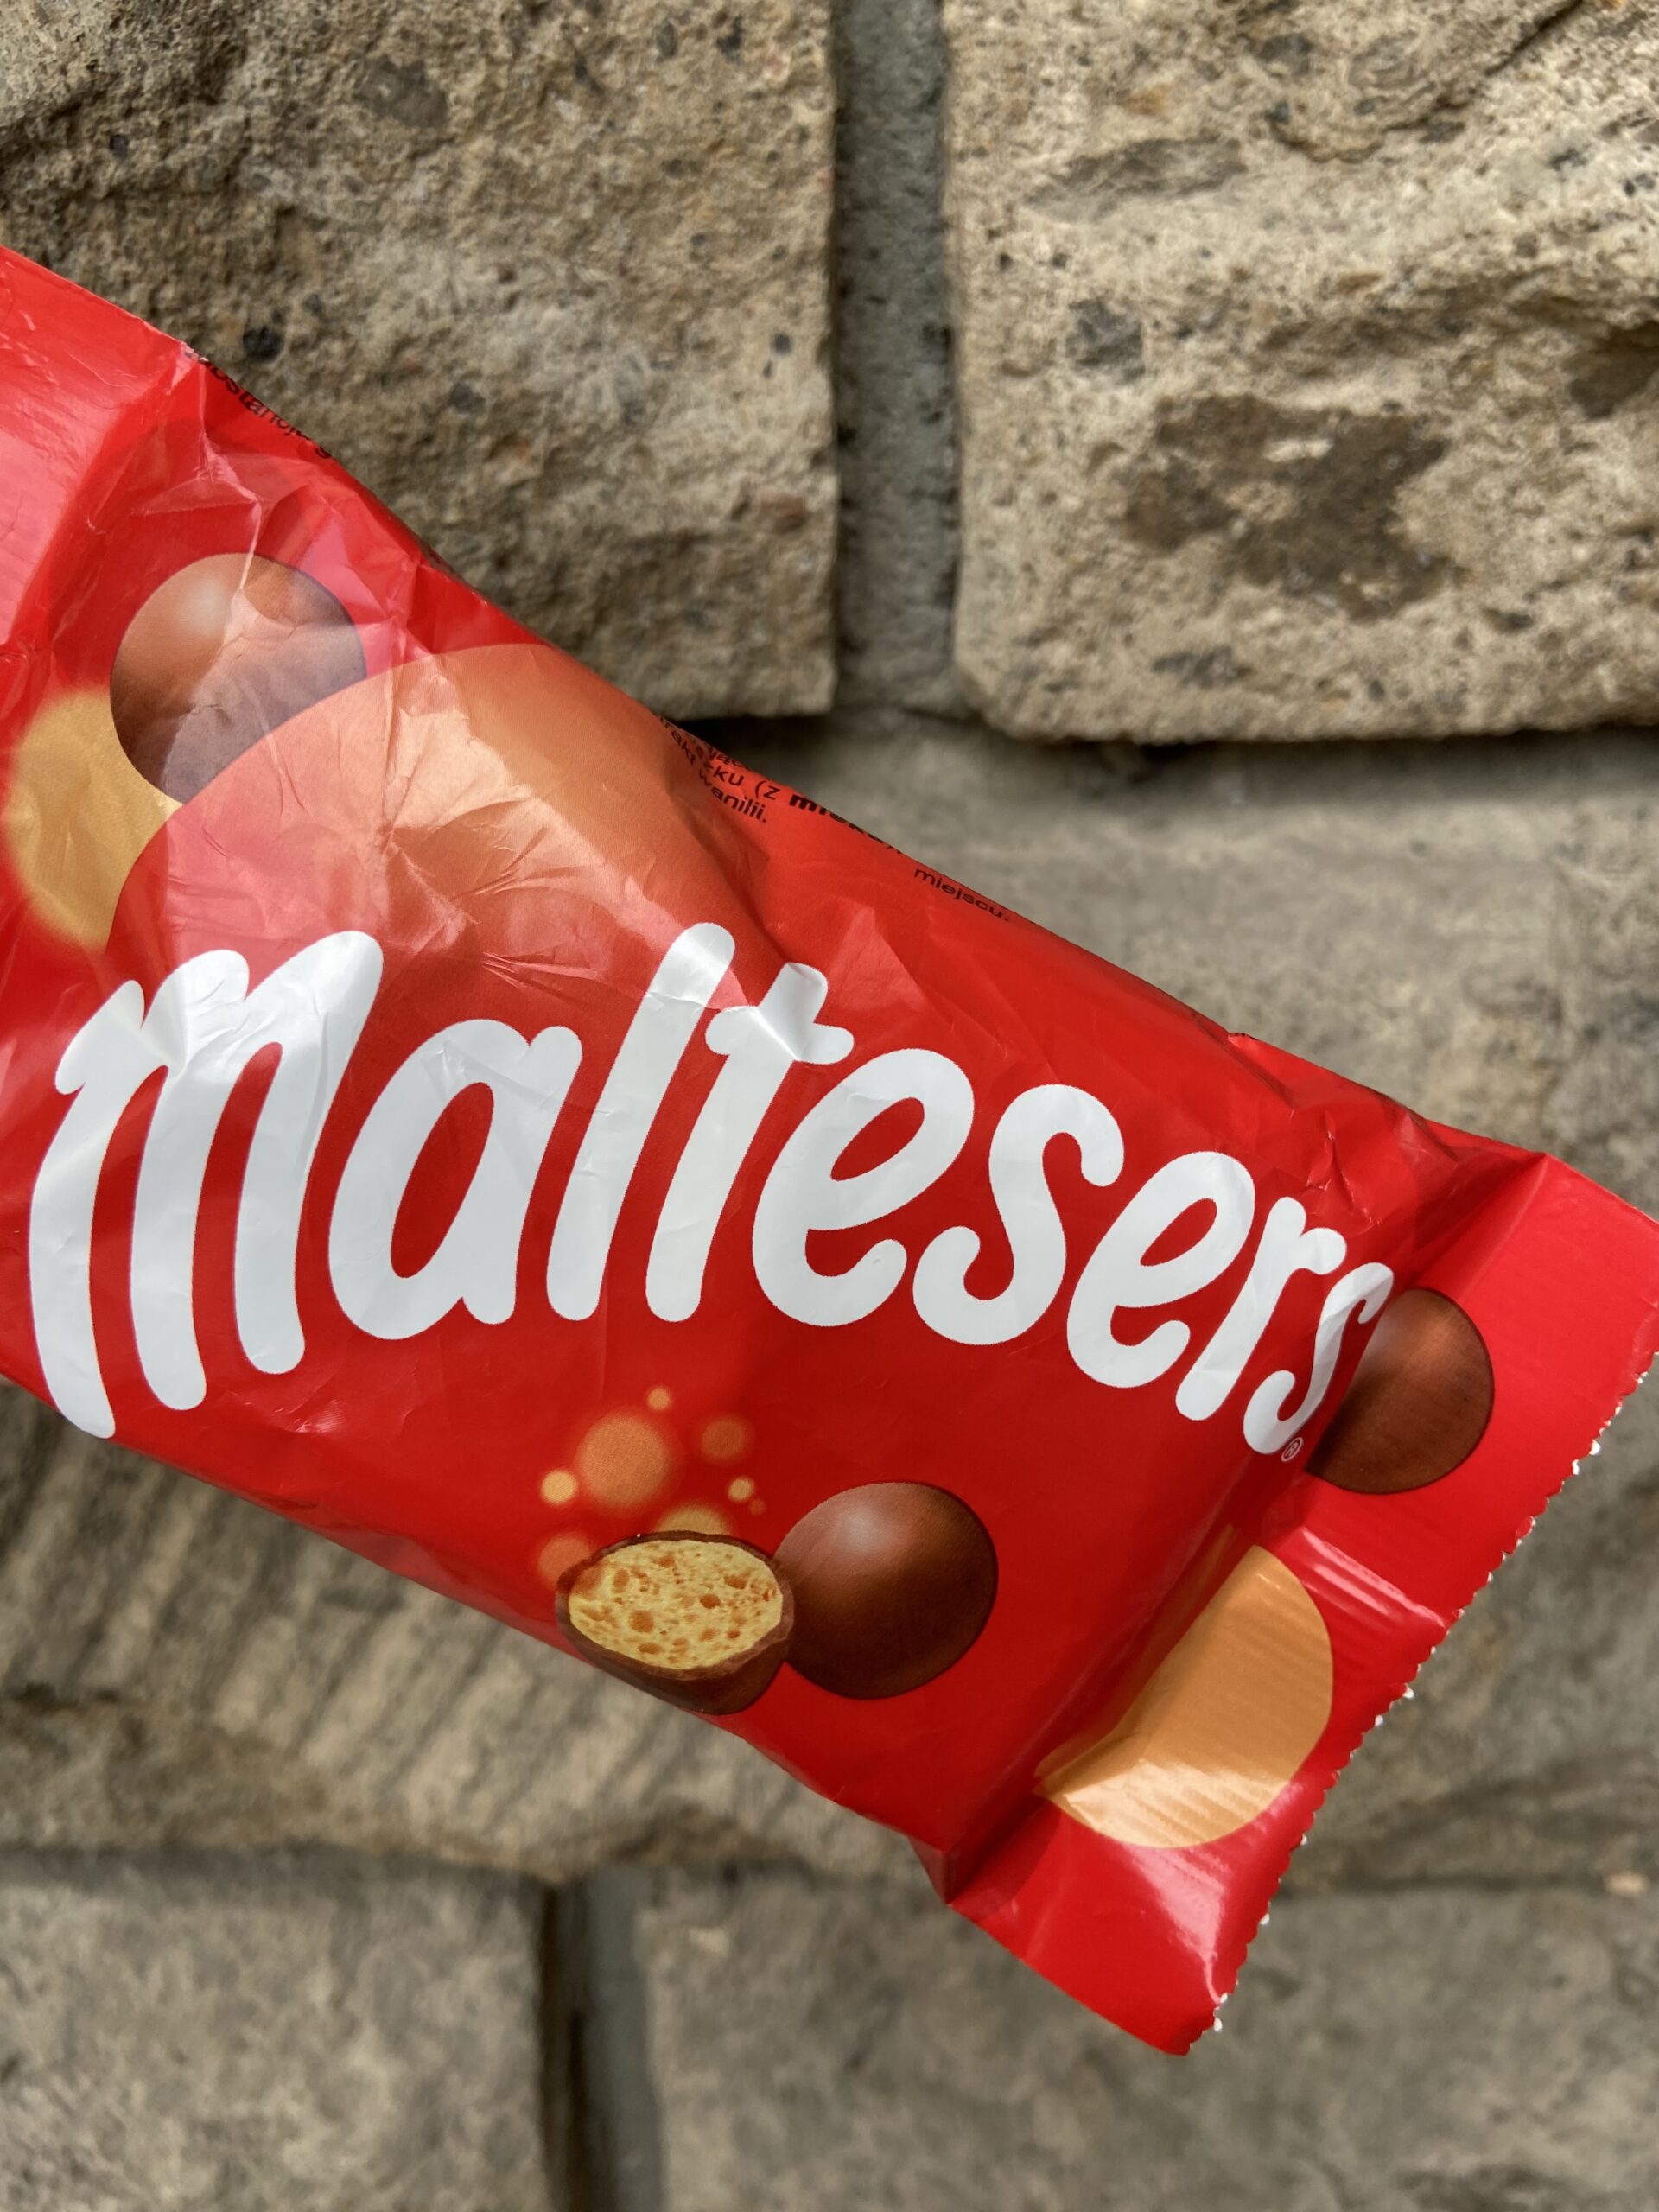 Maltesers, դրաժեներ, դրաժե, շոկոլադե գնդիկներ, շոկոլադ, шоколад, կարծիք, կարծիքներ, կիսվիր, կիսվիռ, kisvir, kisvir.am